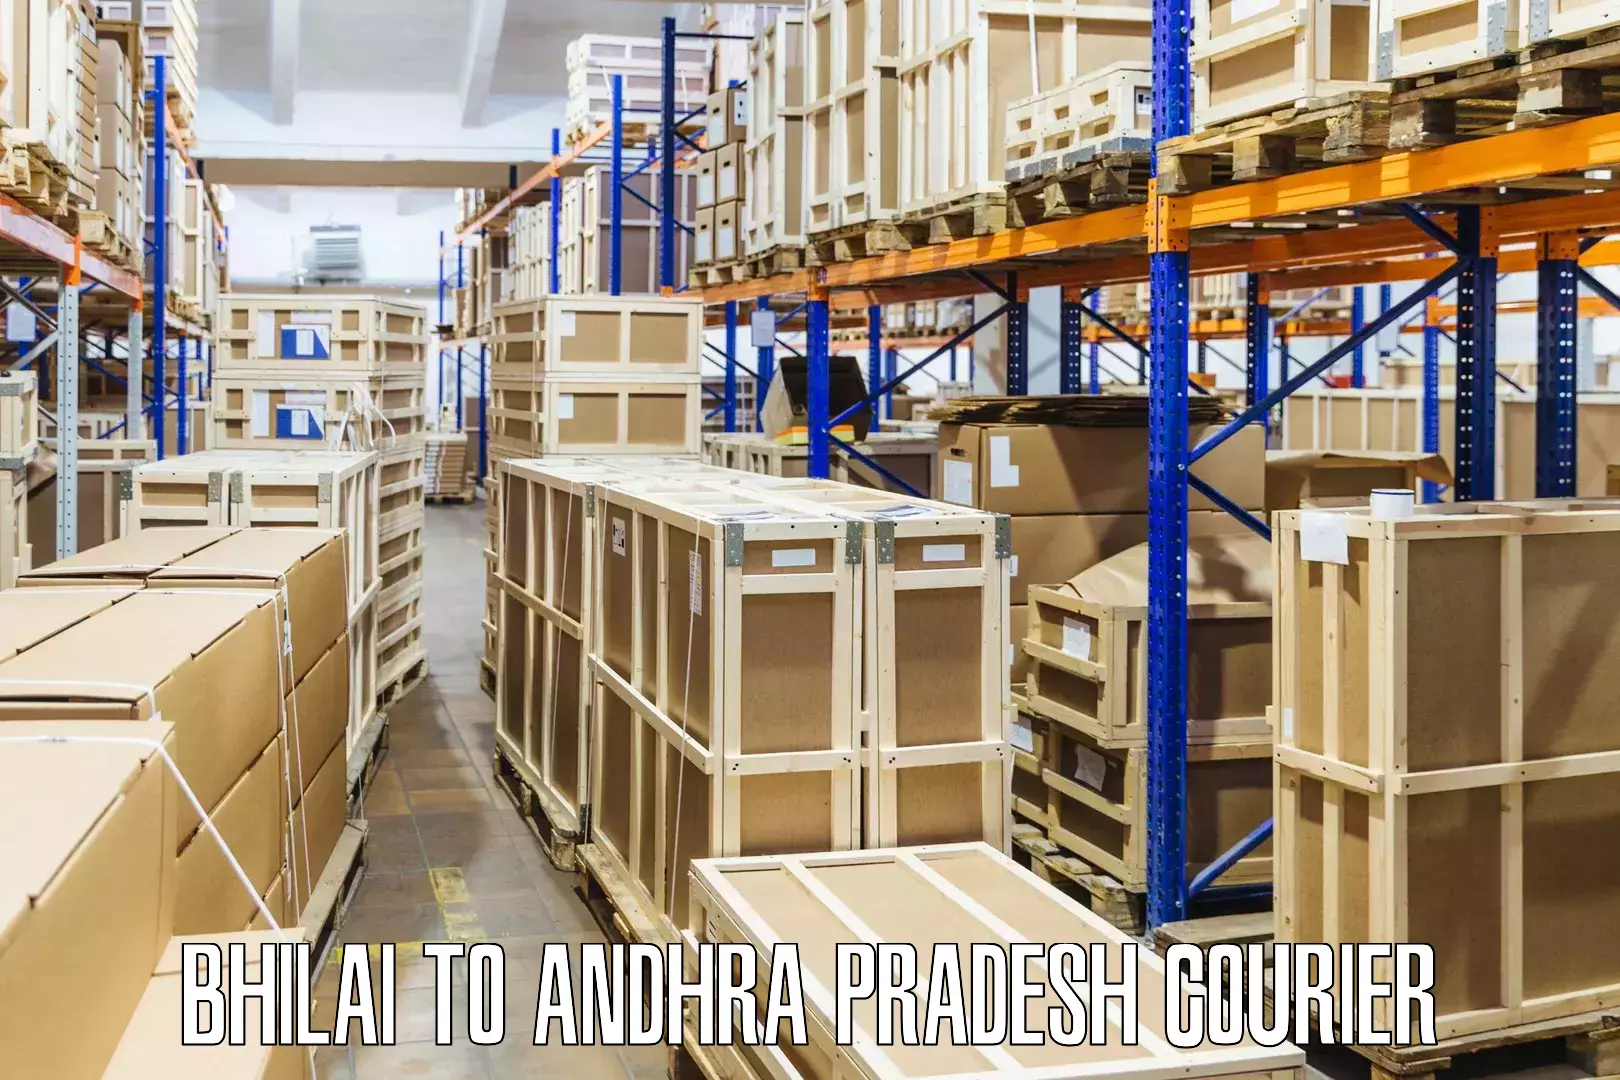 Secure shipping methods Bhilai to Andhra Pradesh